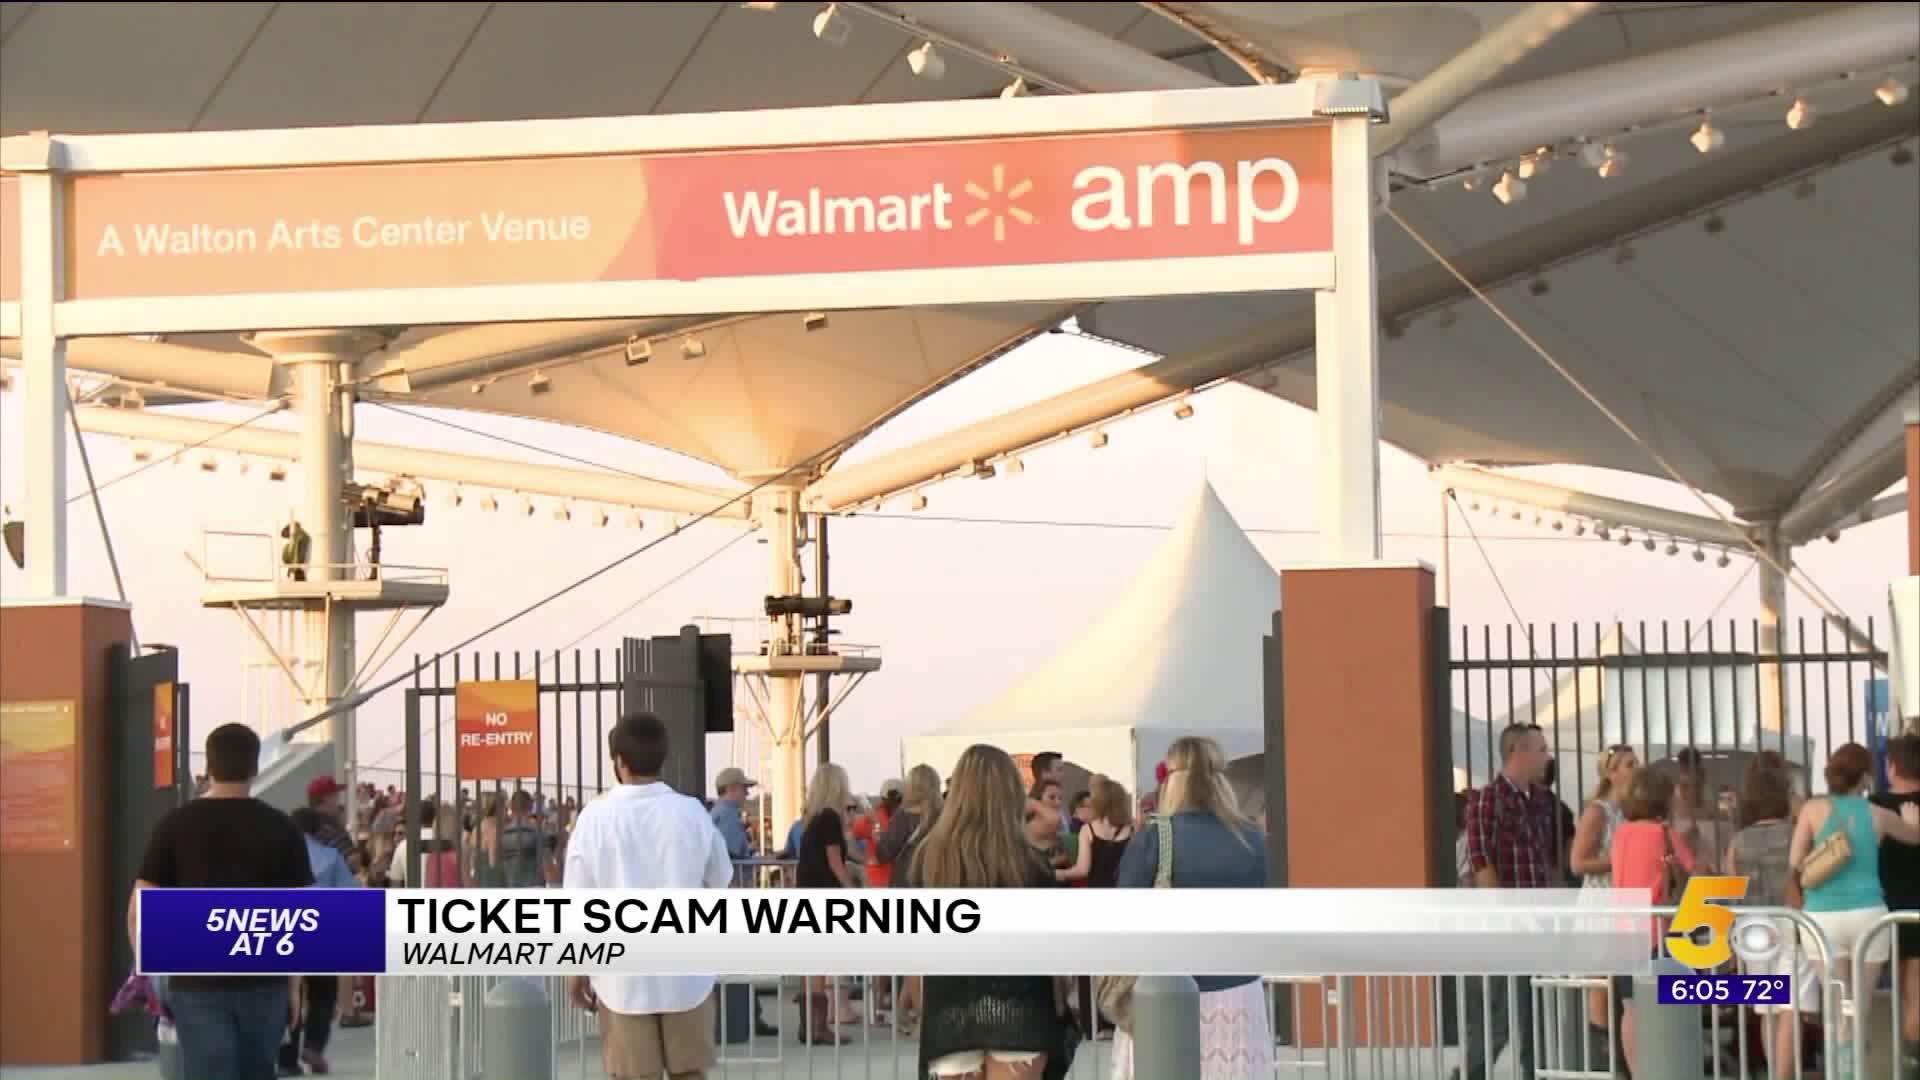 Walmart AMP Ticket Scam Warning